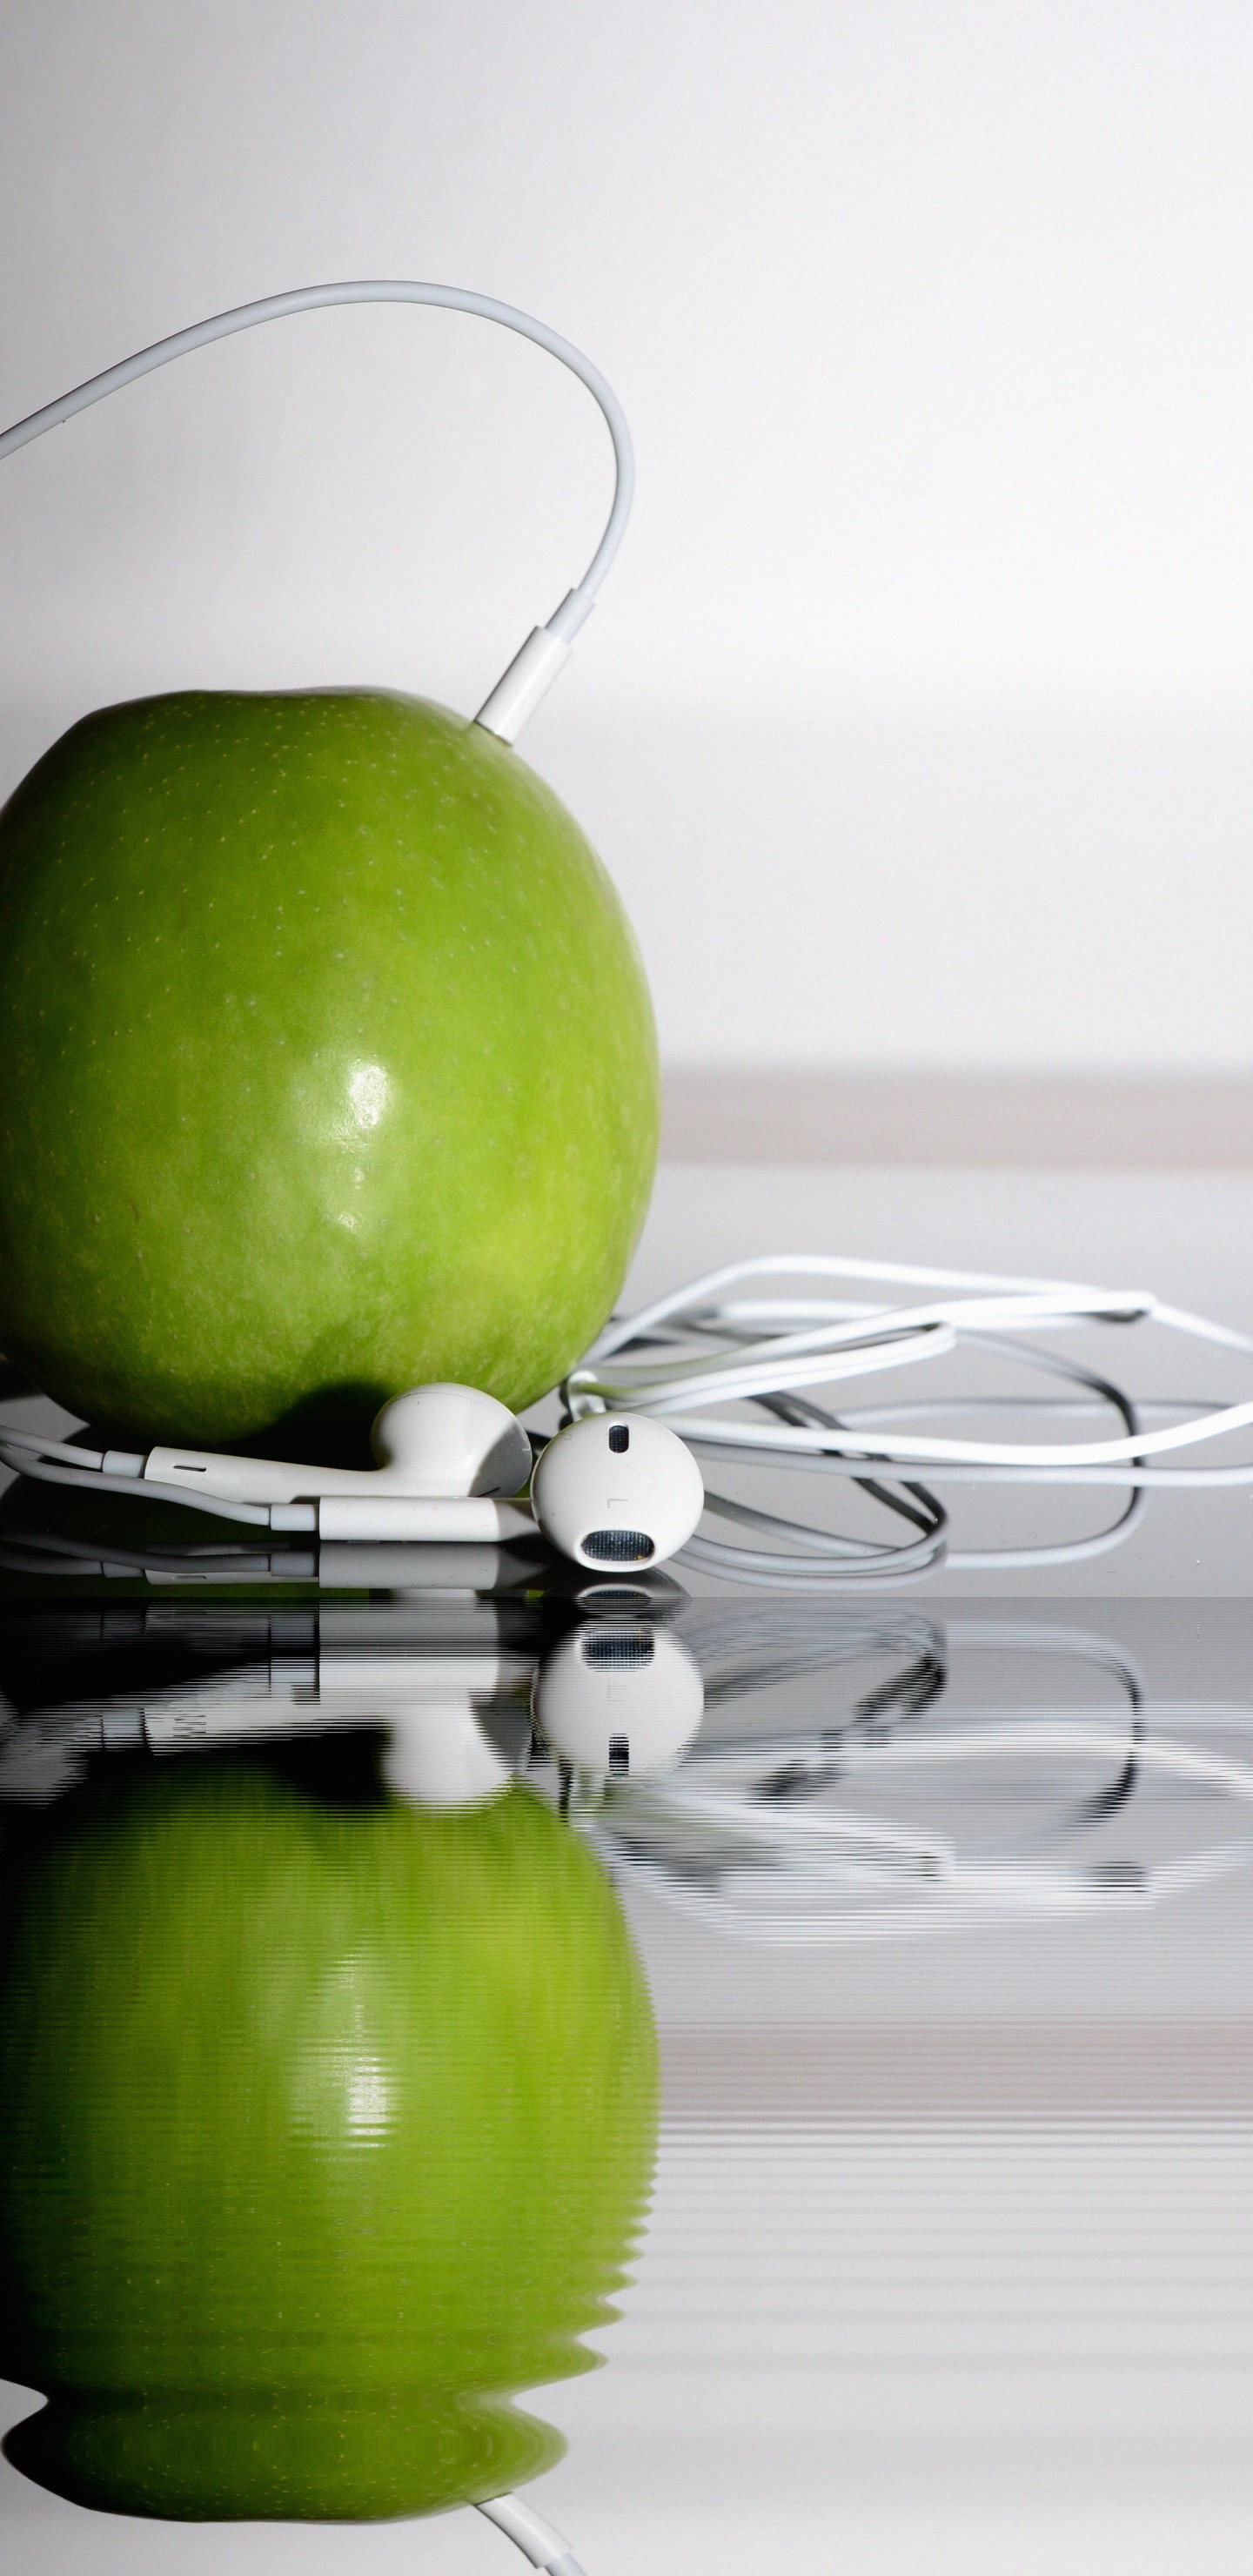 苹果的耳机, 绿色的, 奶奶史密斯, Apple, 食品 壁纸 1440x2960 允许